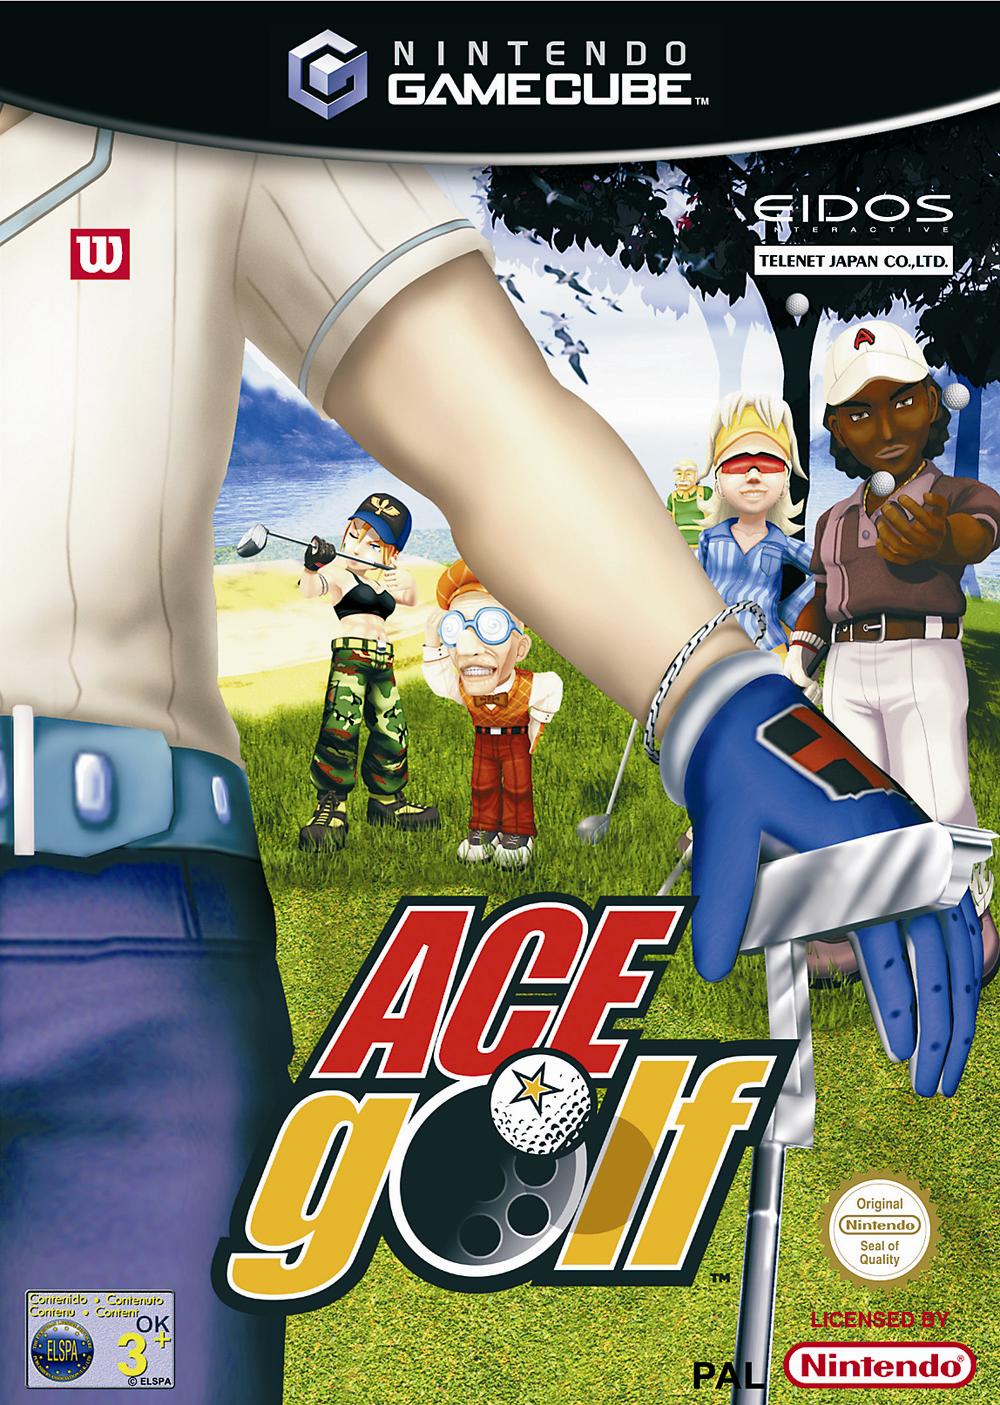 Face avant du boxart du jeu Ace Golf (Europe) sur Nintendo GameCube